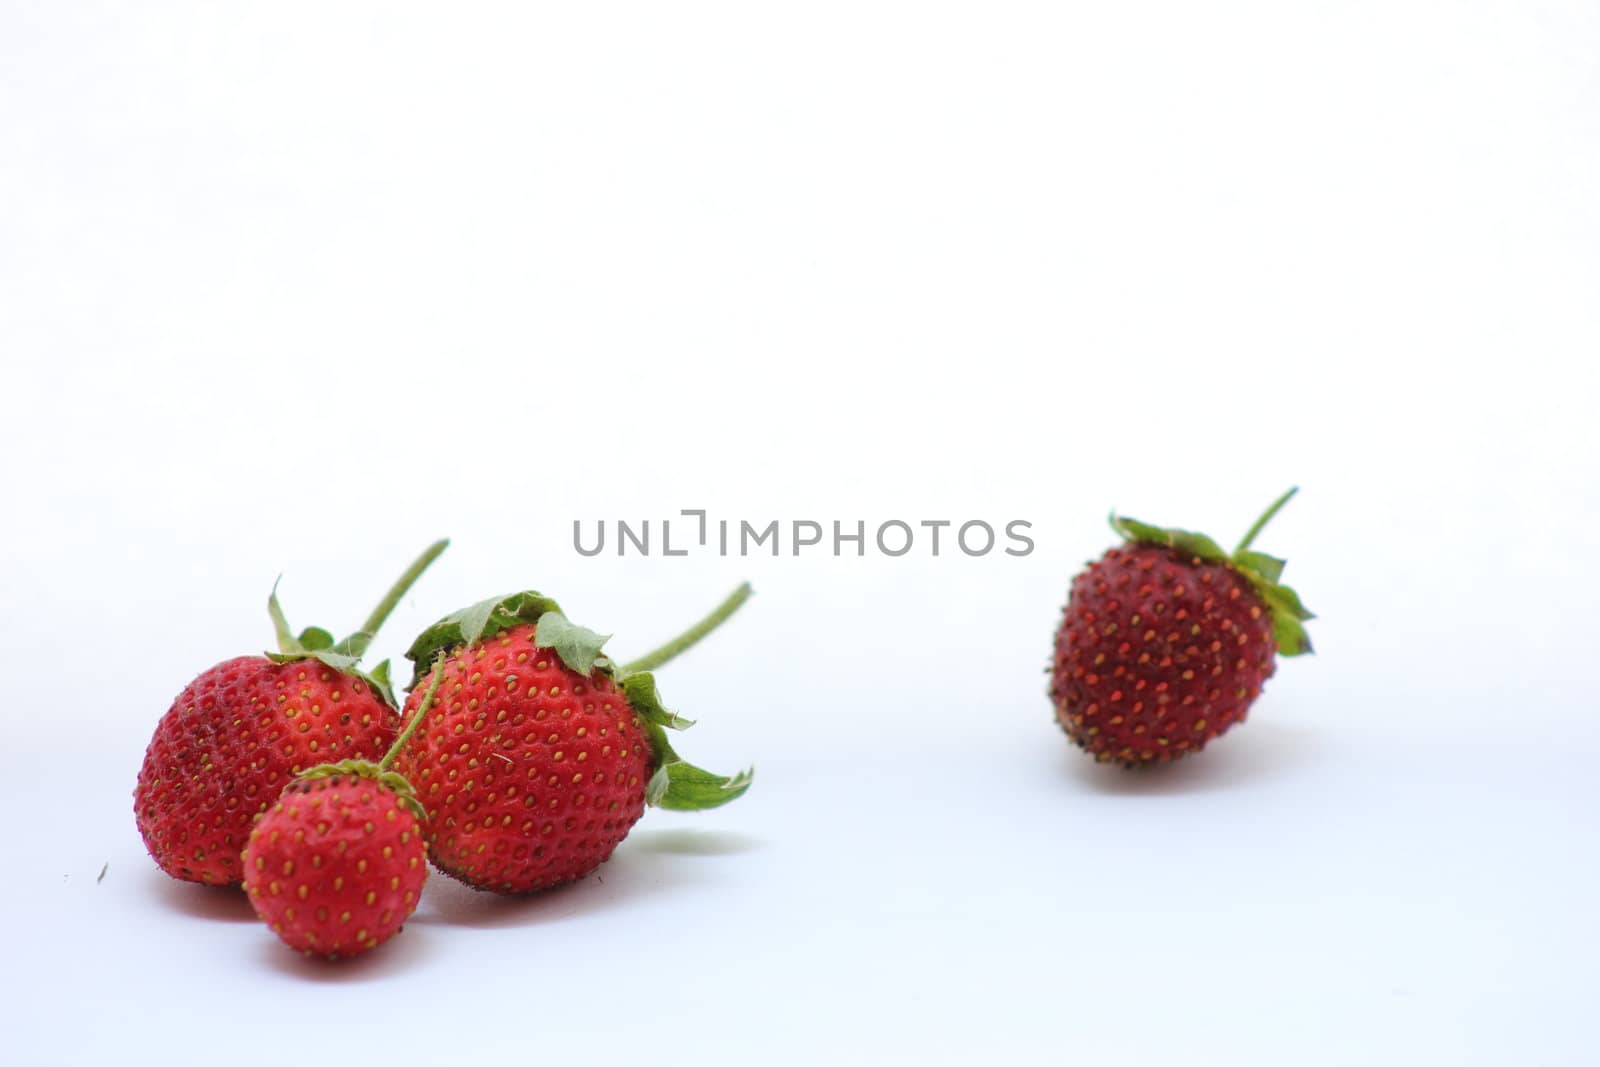 Strawberries by abhbah05